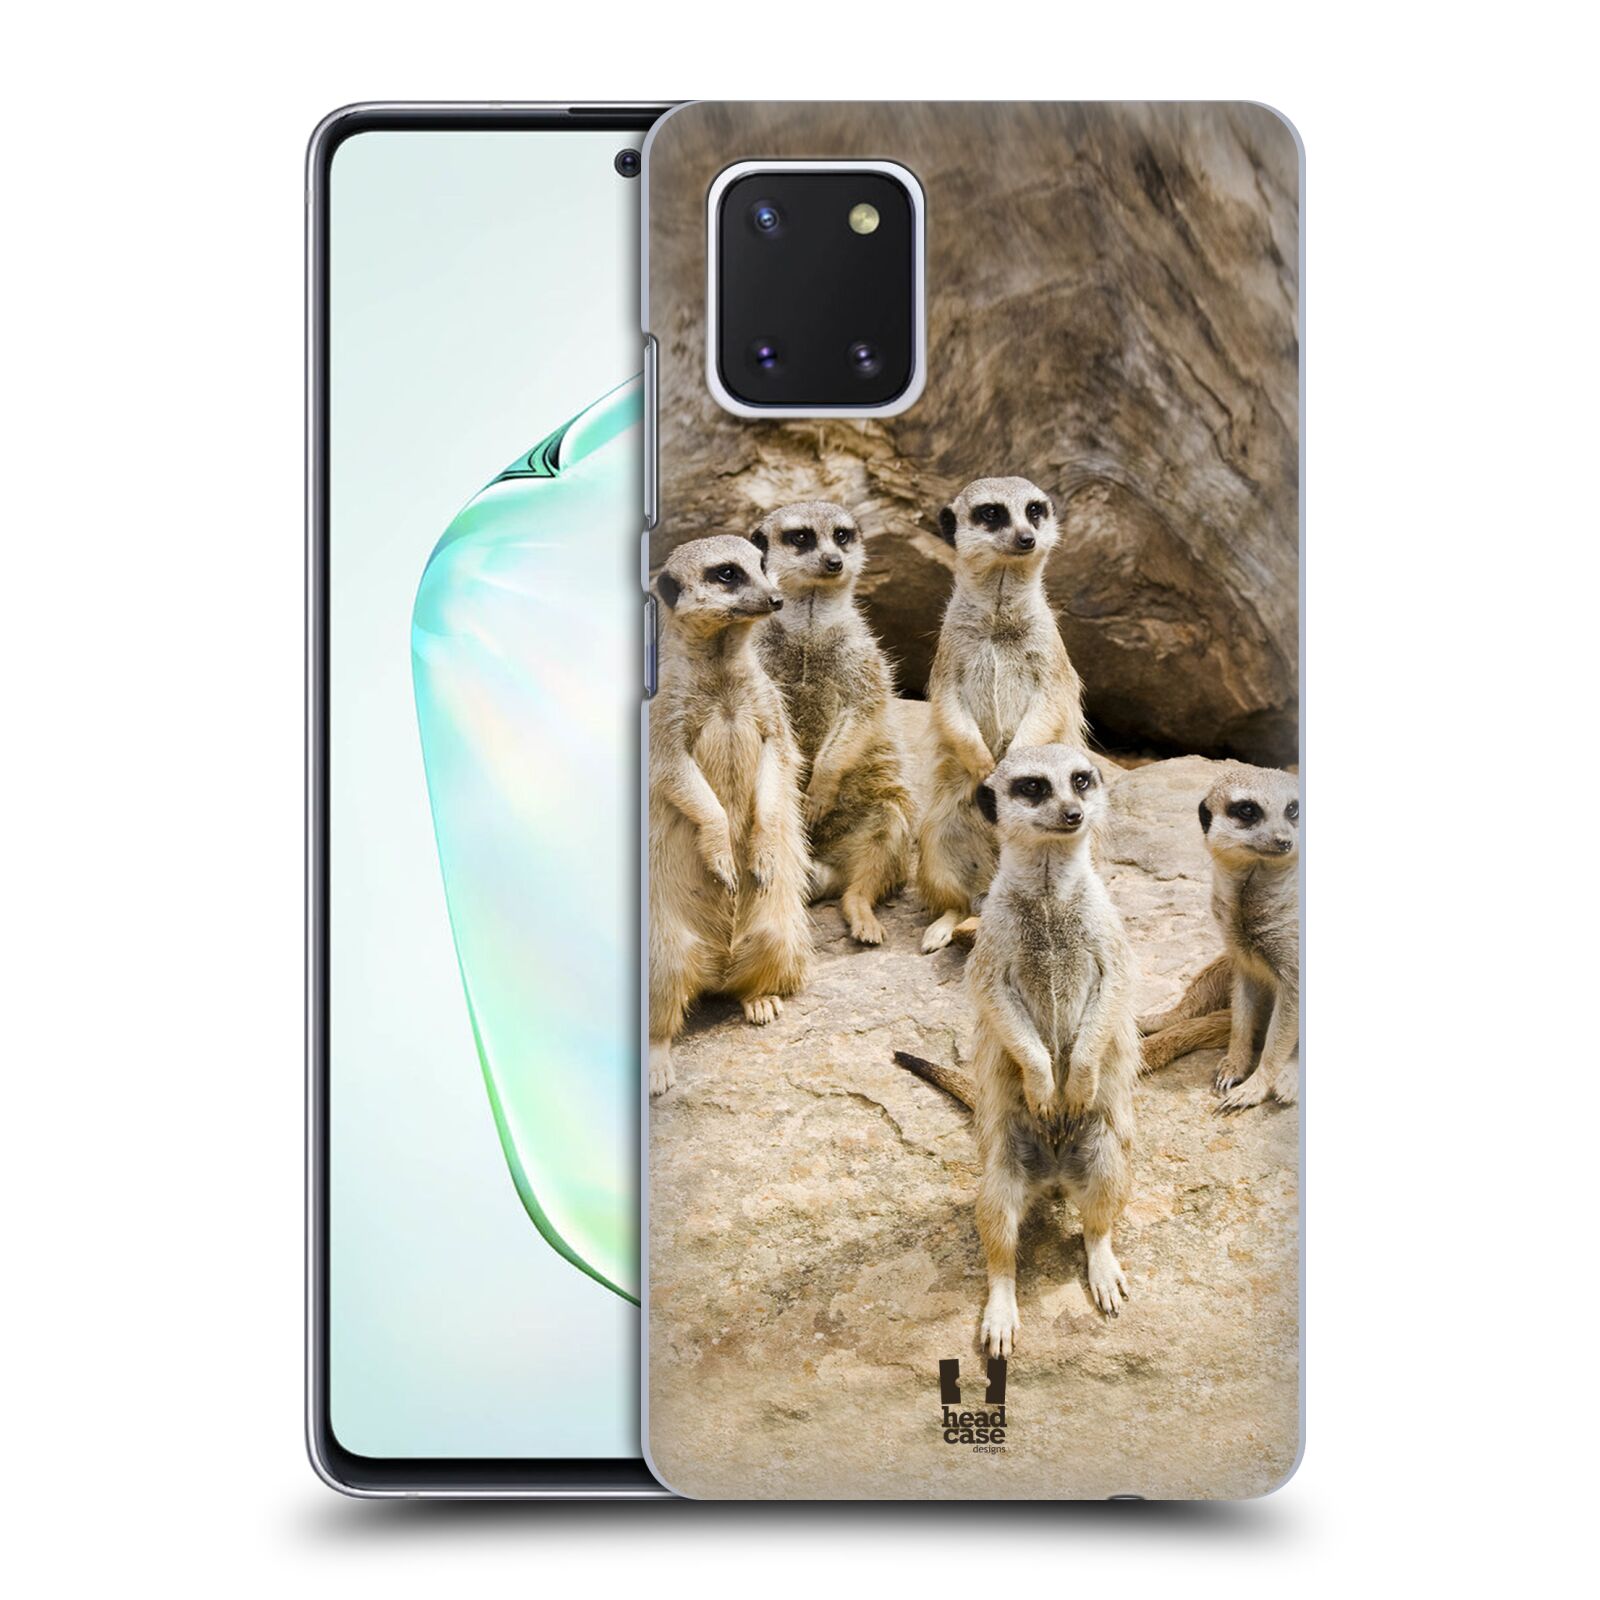 Zadní obal pro mobil Samsung Galaxy Note 10 Lite - HEAD CASE - Svět zvířat roztomilé surikaty